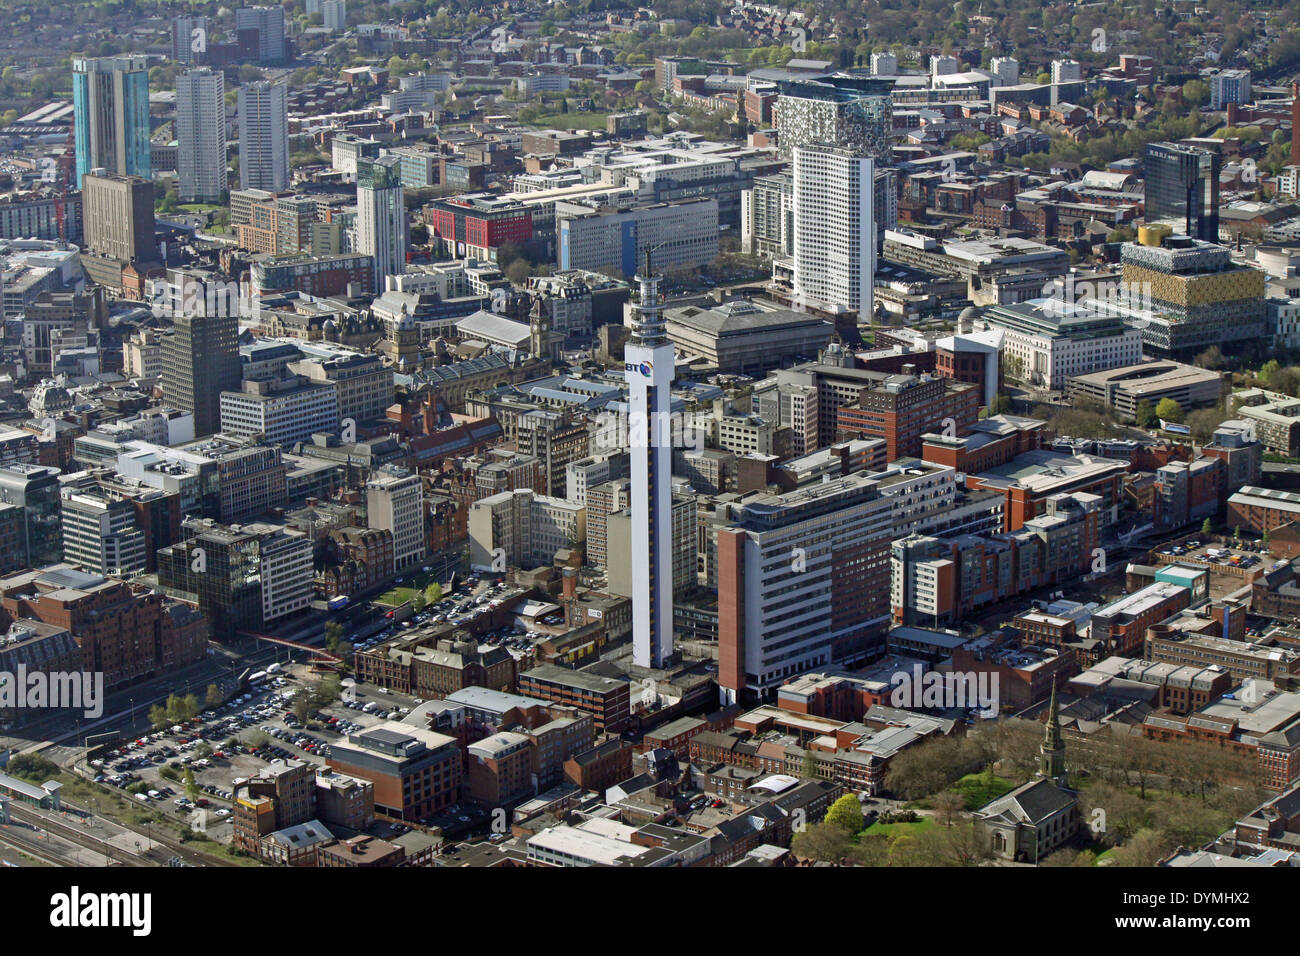 Vista aerea della BT Tower & Brindley House guardando a sud attraverso il centro di Birmingham (St La Chiesa di Paolo è visibile solo in basso a destra del colpo) Foto Stock